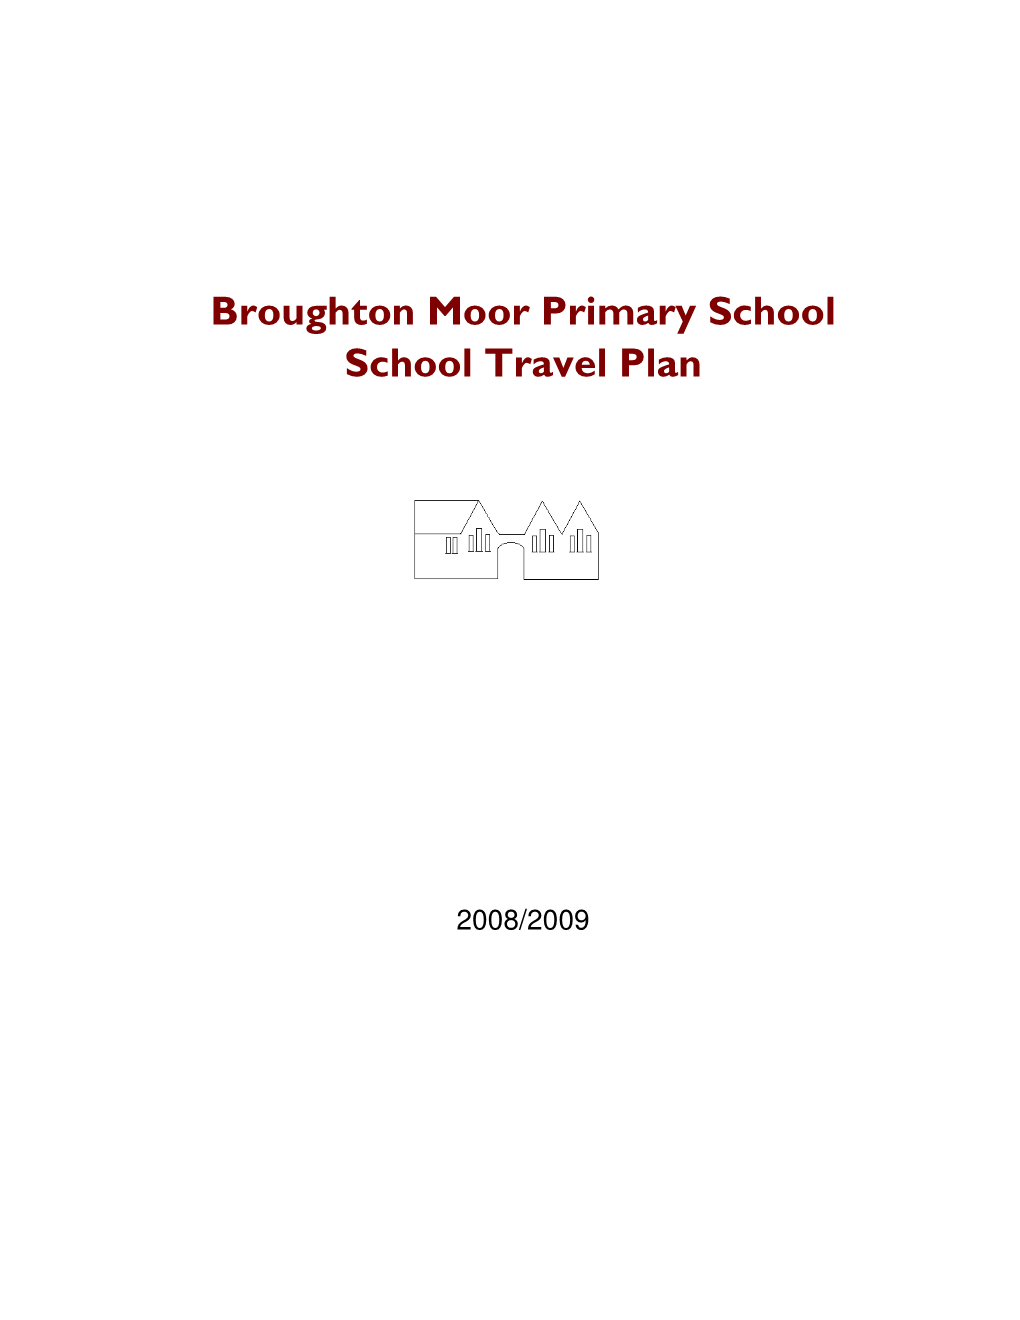 Broughton Moor Primary School School Travel Plan